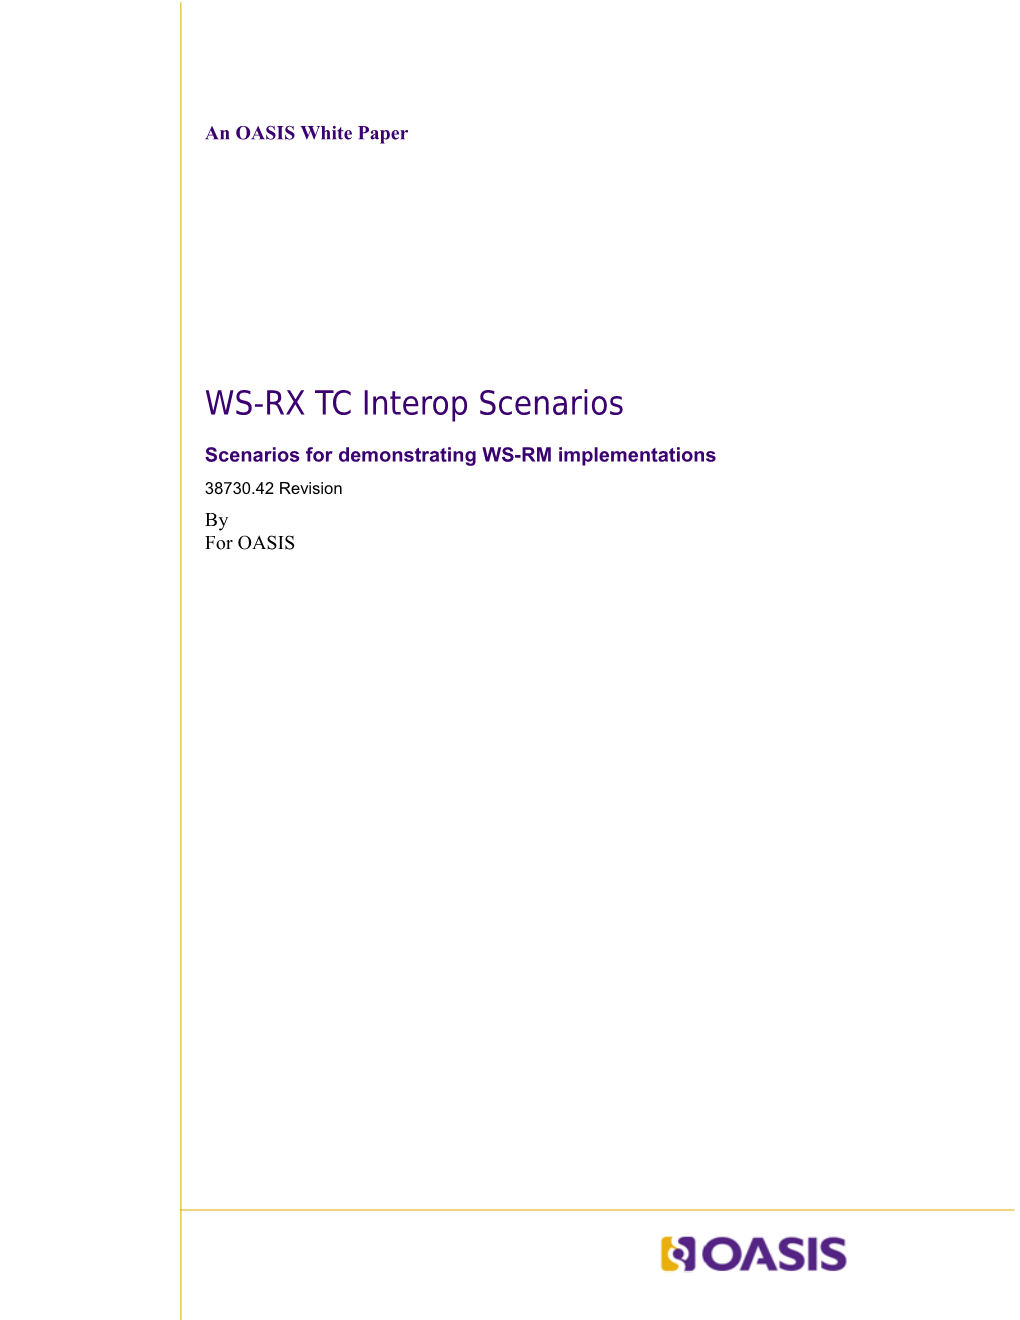 WS-RX TC Interop Scenarios